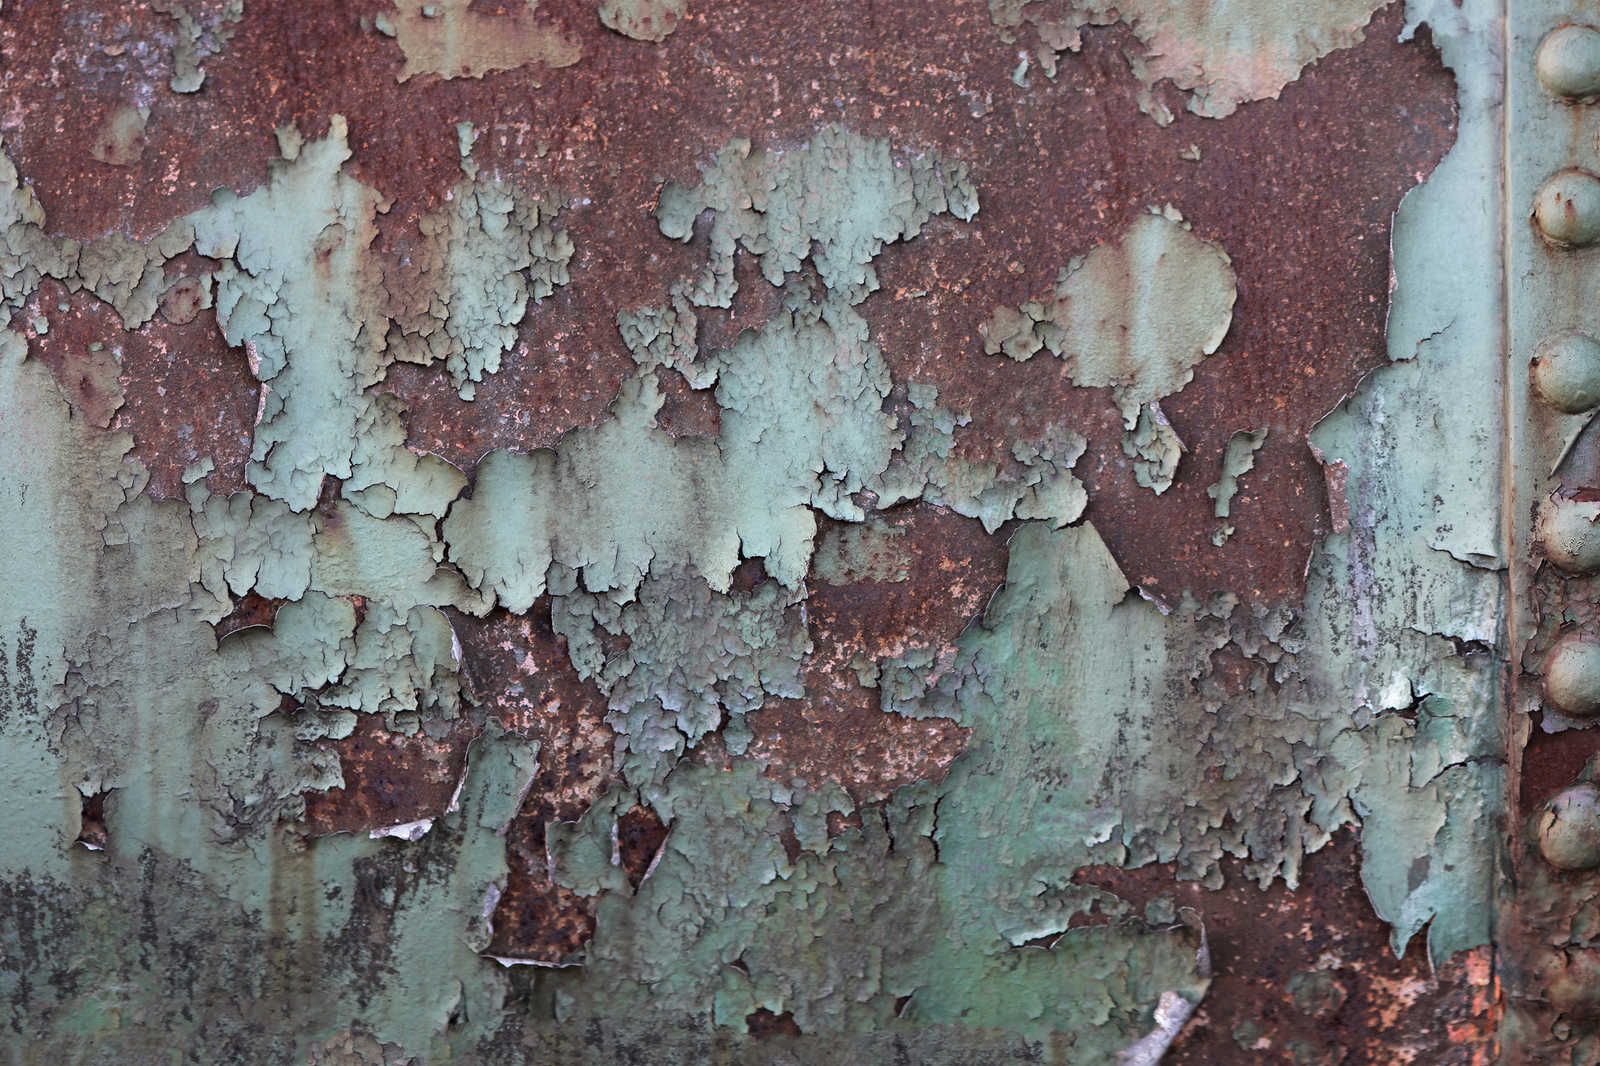             Pintura sobre lienzo corroyendo la pared de un barco - chapa metálica con óxido - 0,90 m x 0,60 m
        